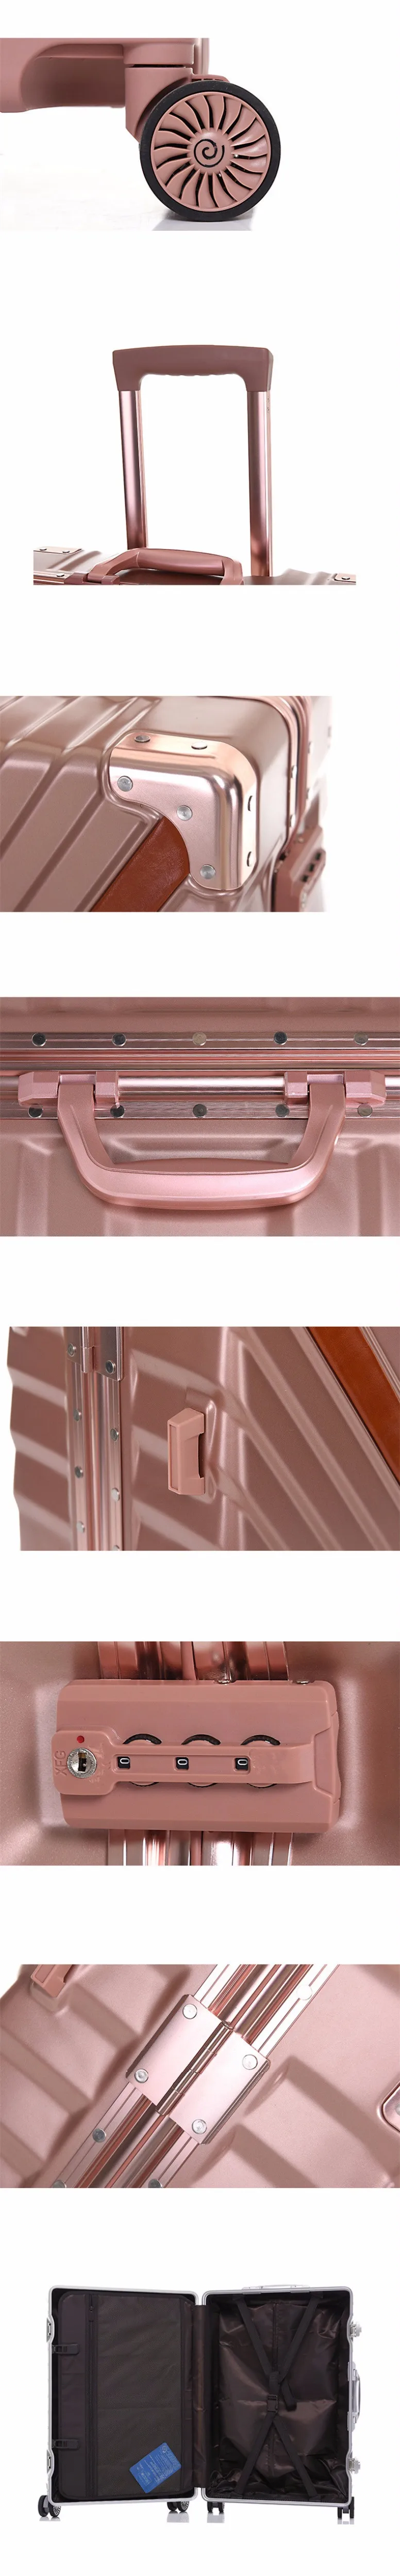 Спиннер Nniversal колесо Carry-On, алюминиевый каркас чемодан на колесиках сумка, многоколесная тележка чехол, жесткая дорожная коробка Drag